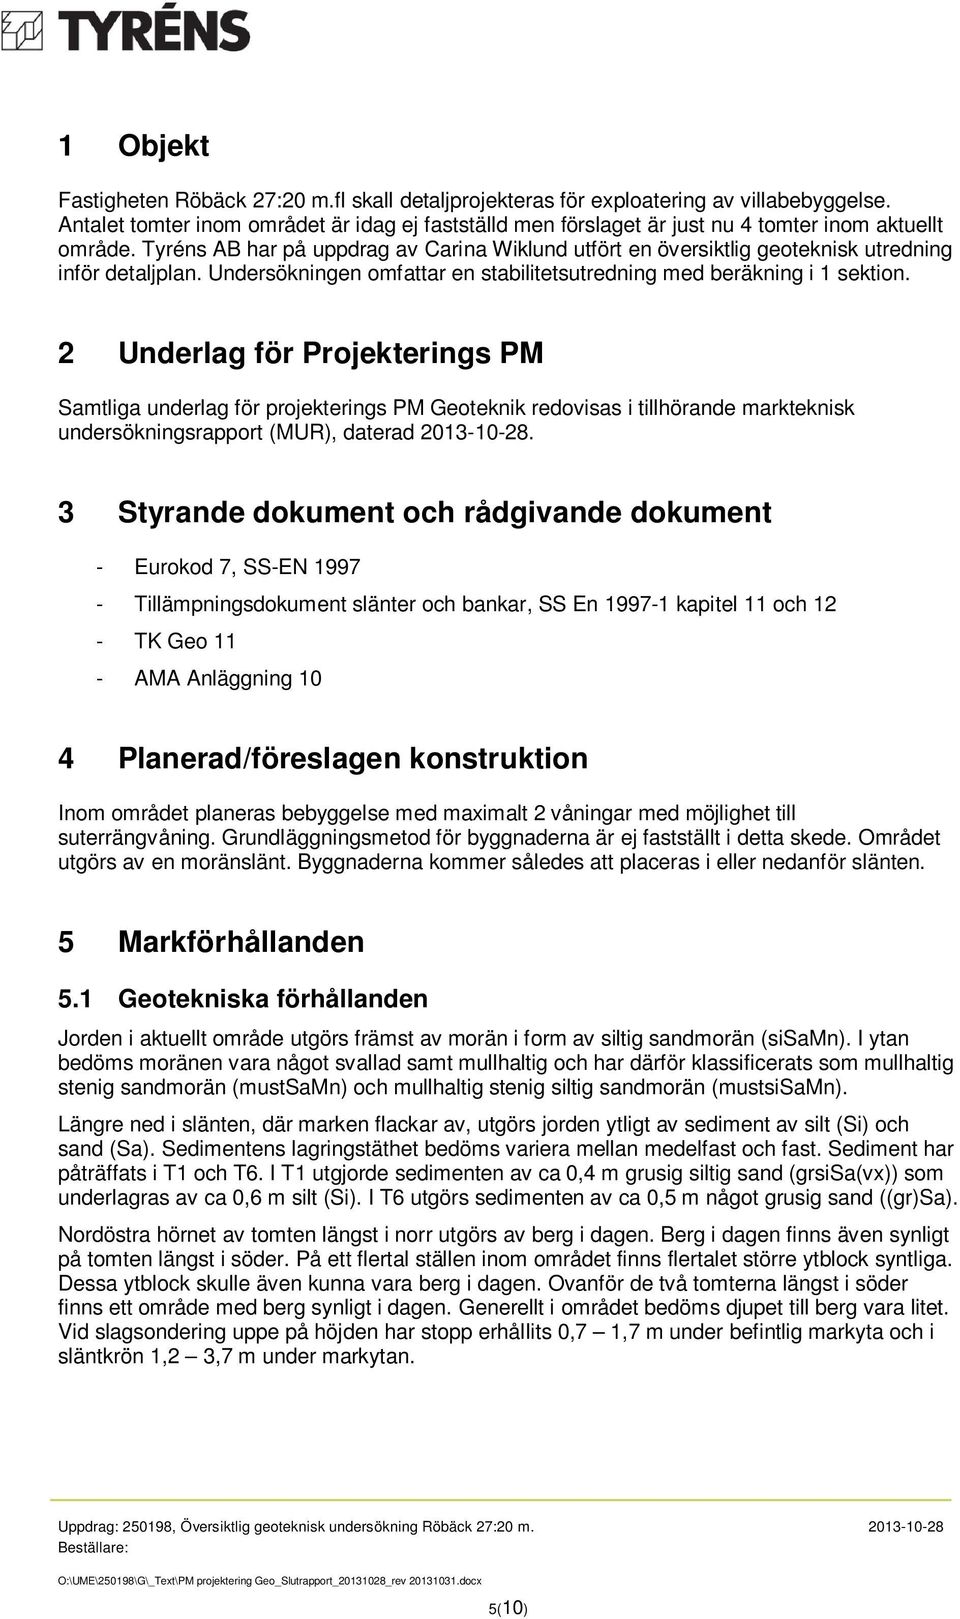 Tyréns AB har på uppdrag av Carina Wiklund utfört en översiktlig geoteknisk utredning inför detaljplan. Undersökningen omfattar en stabilitetsutredning med beräkning i 1 sektion.